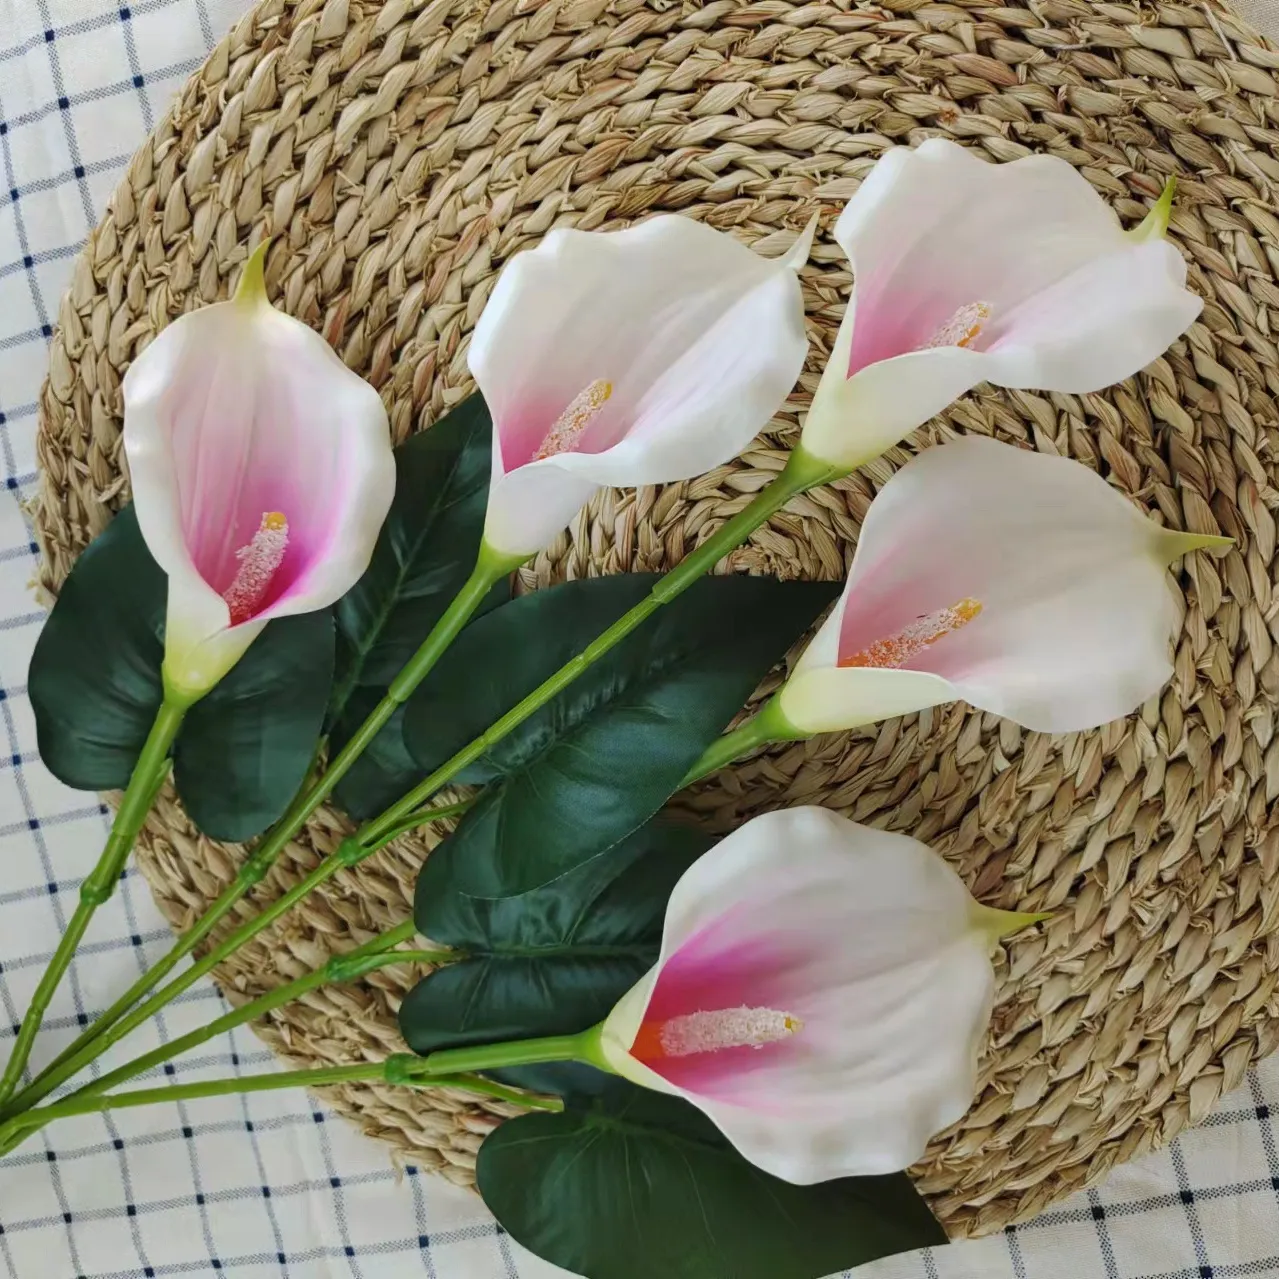 N-107 Großhandel EVA Material gemeinsame Lilien mit 5 Blumen köpfen künstliche Calla Lilie Blumen für Hochzeit Vase Wohnkultur